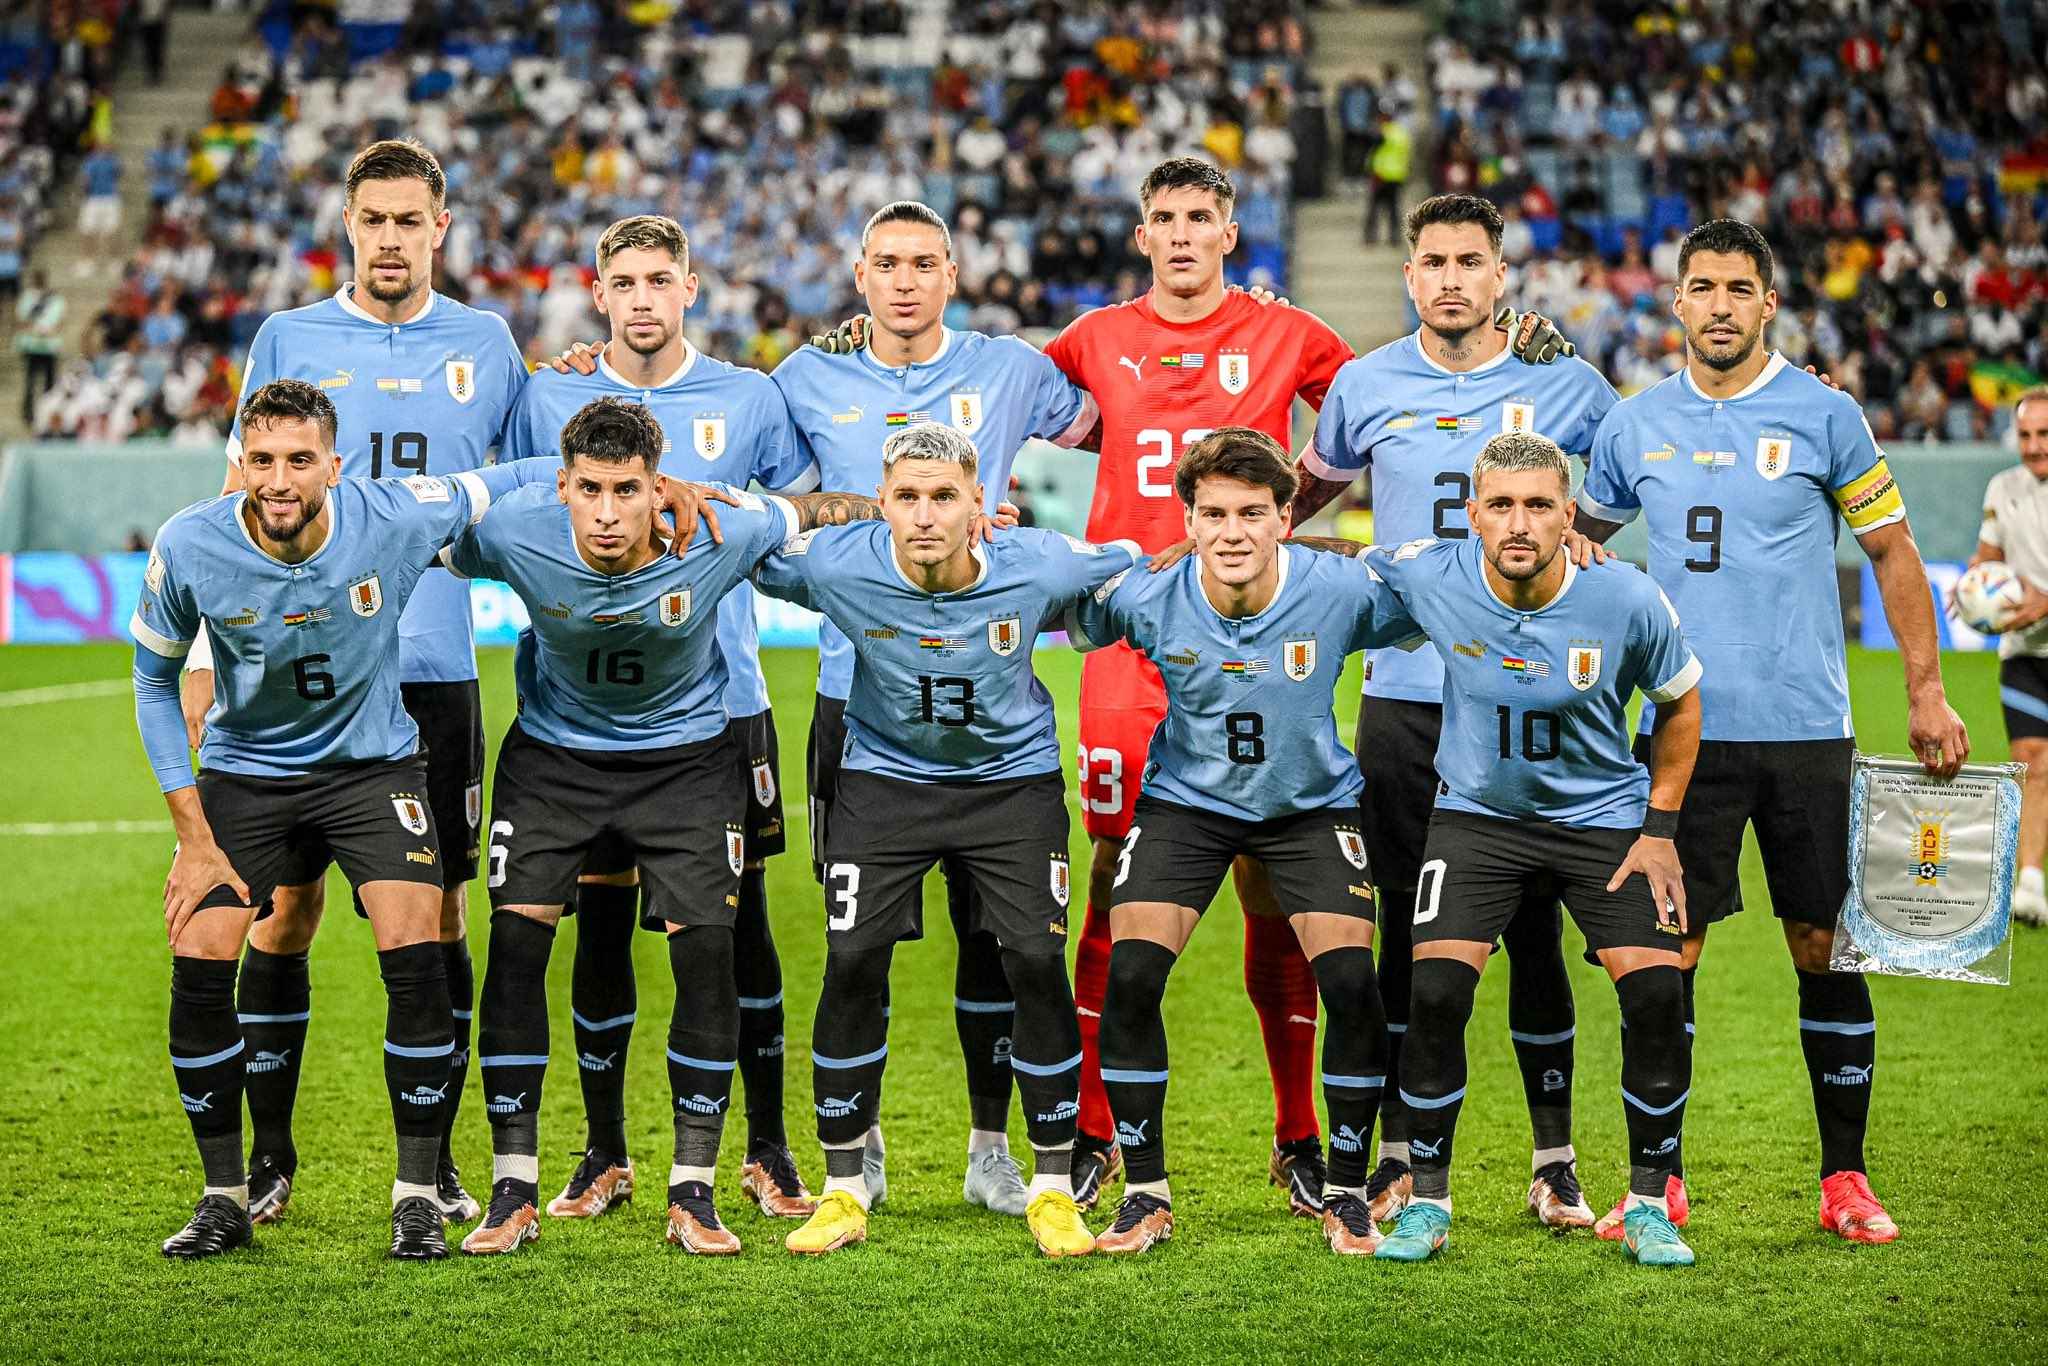 Fútbol Uruguayo - Noticias Uruguay, LARED21 Diario Digital